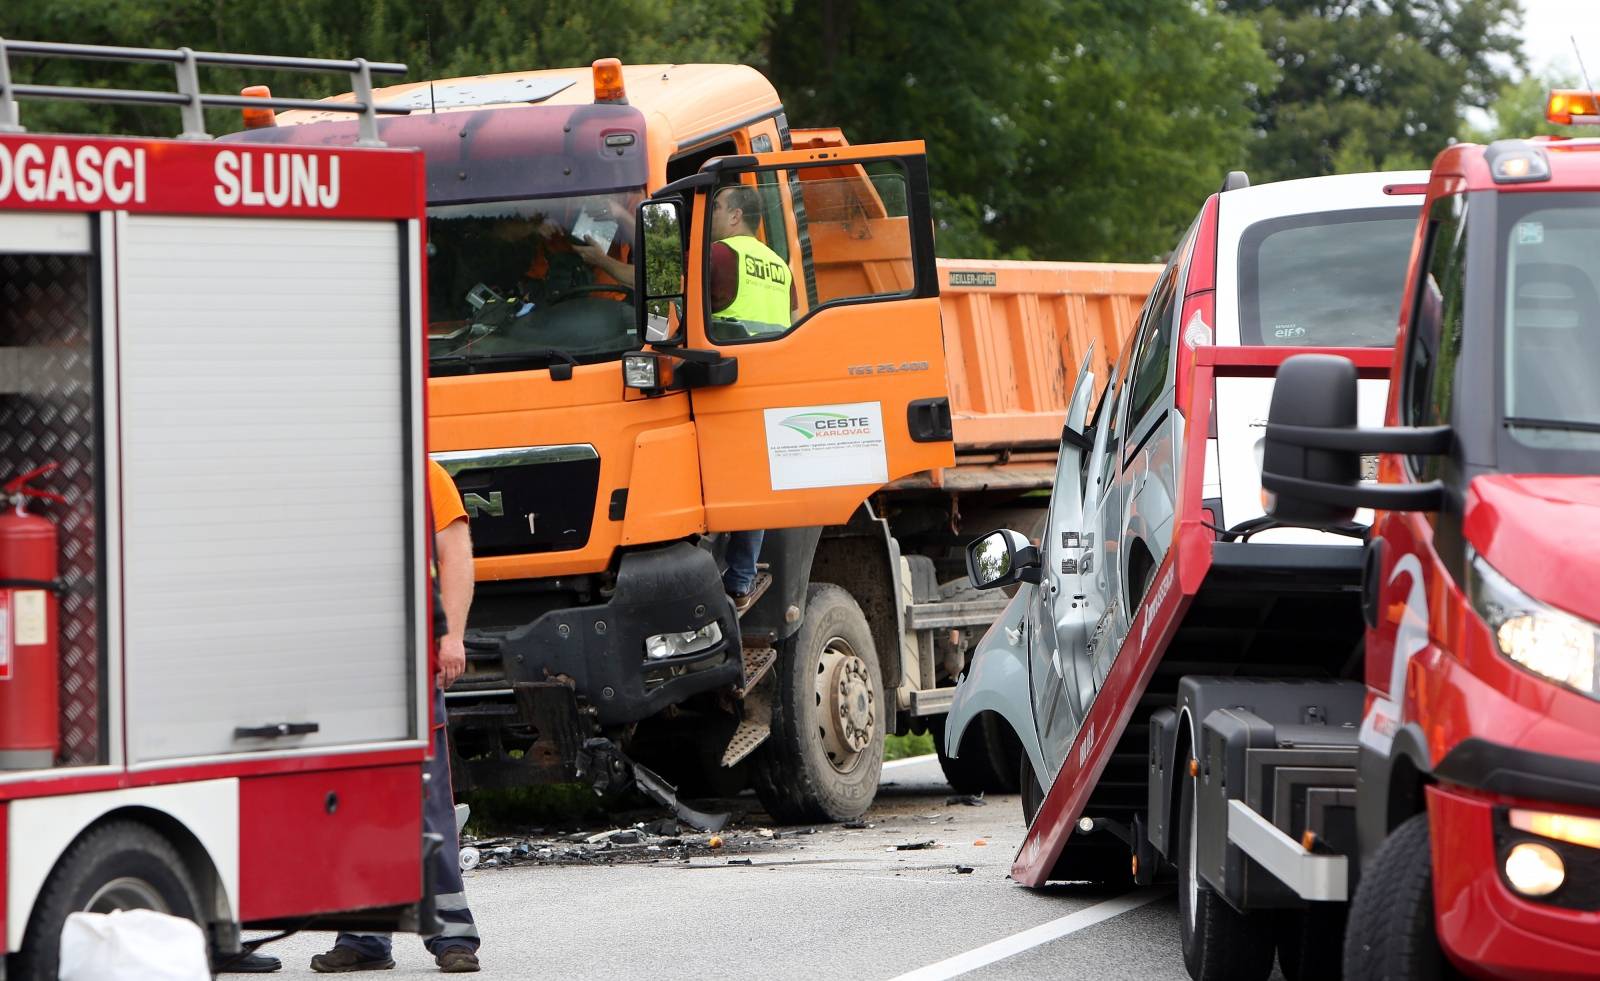 Poginula jedna osoba u sudaru automobila i kamiona u ToÄku kod Slunja